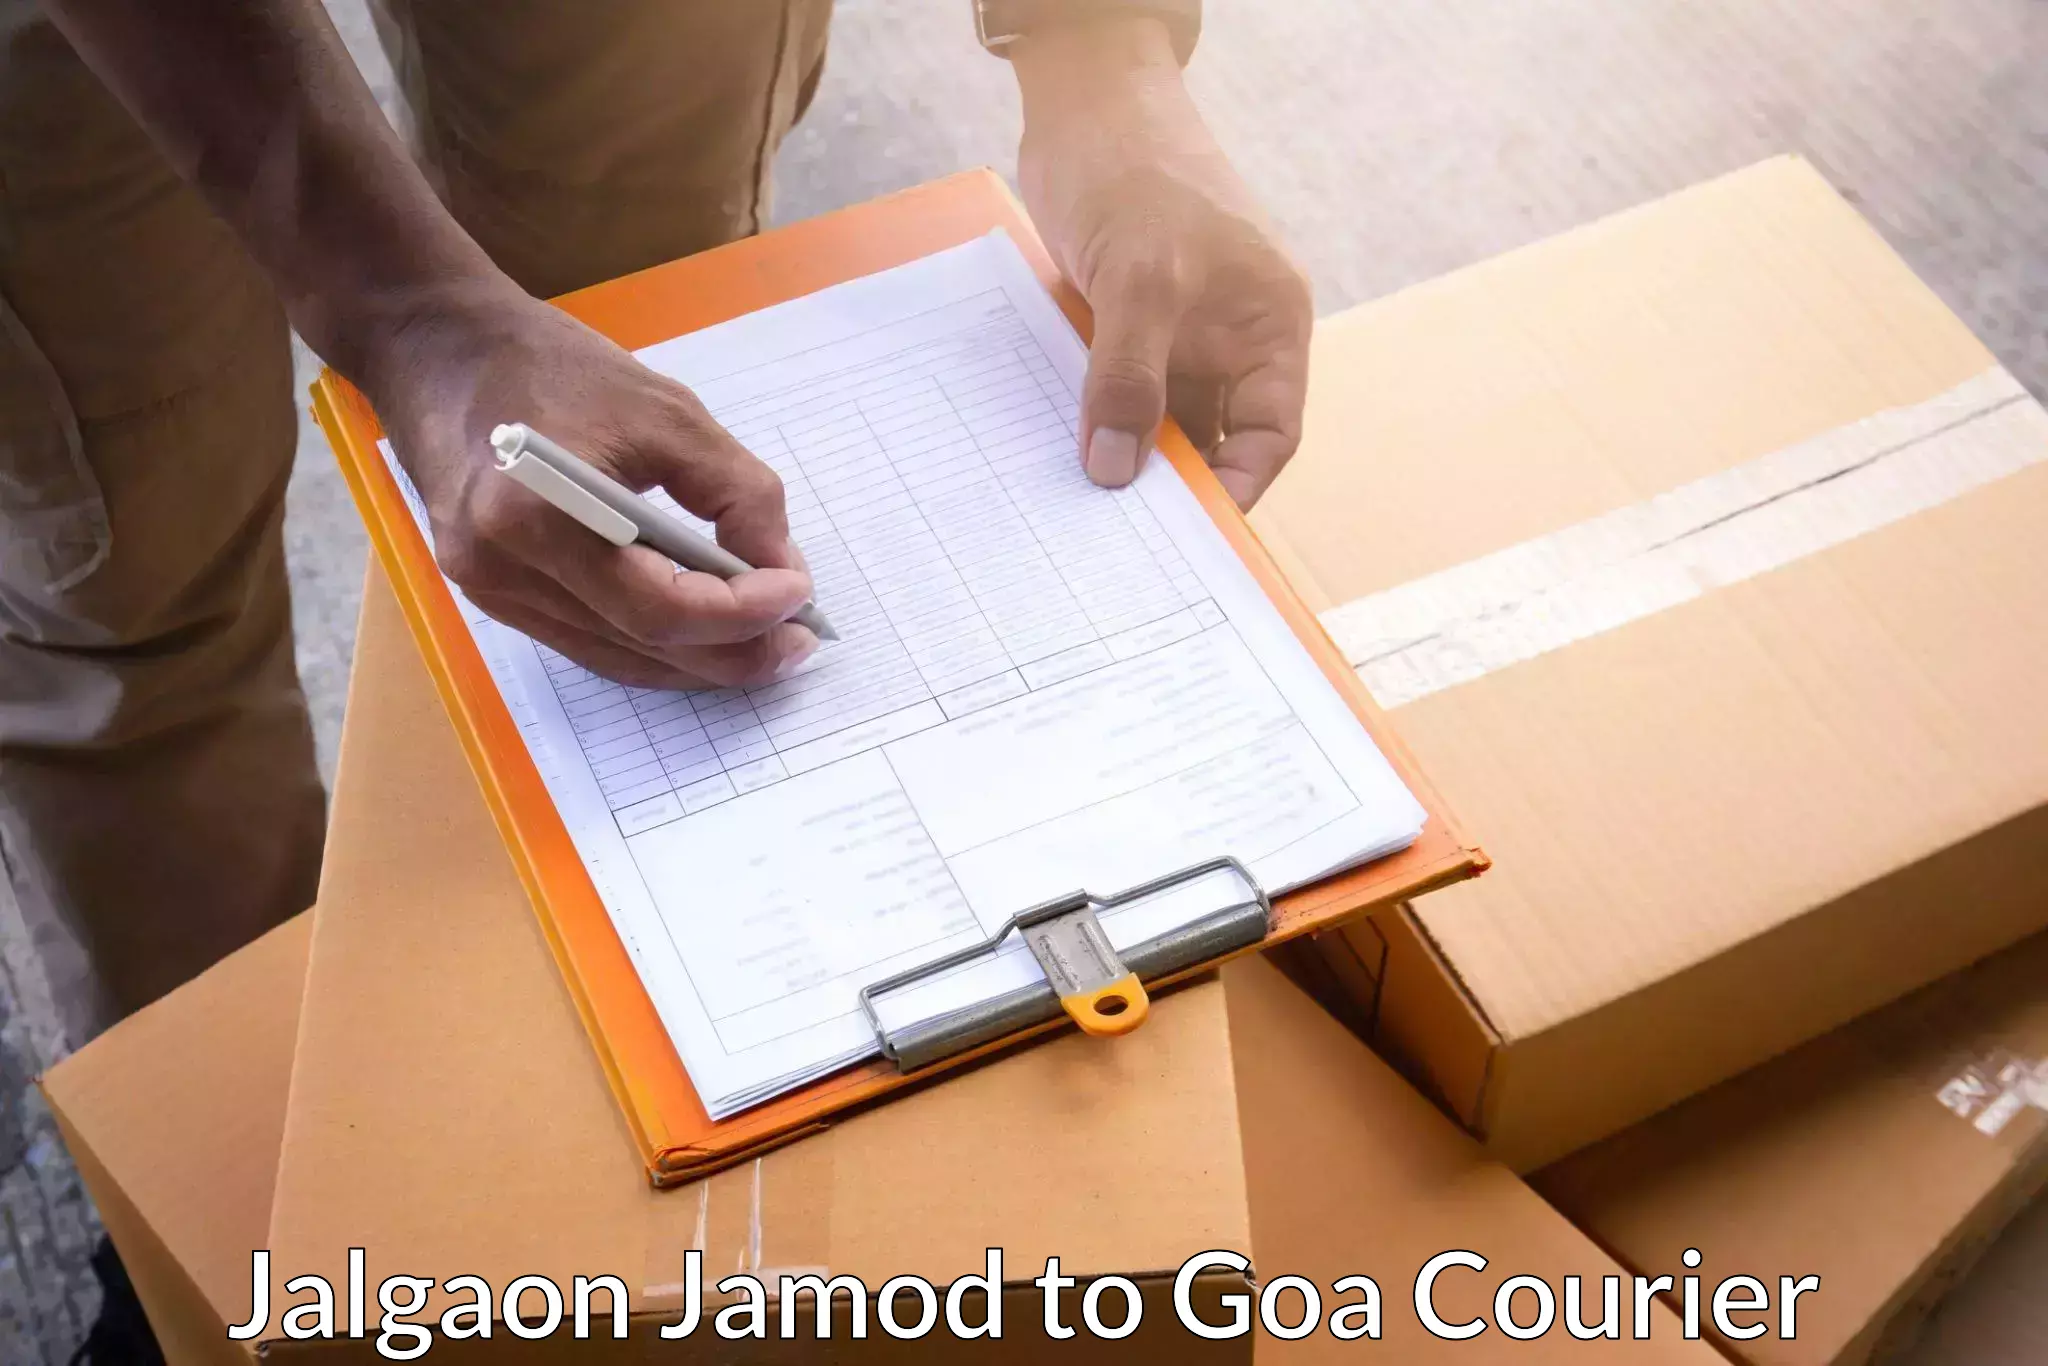 Efficient freight service Jalgaon Jamod to Vasco da Gama